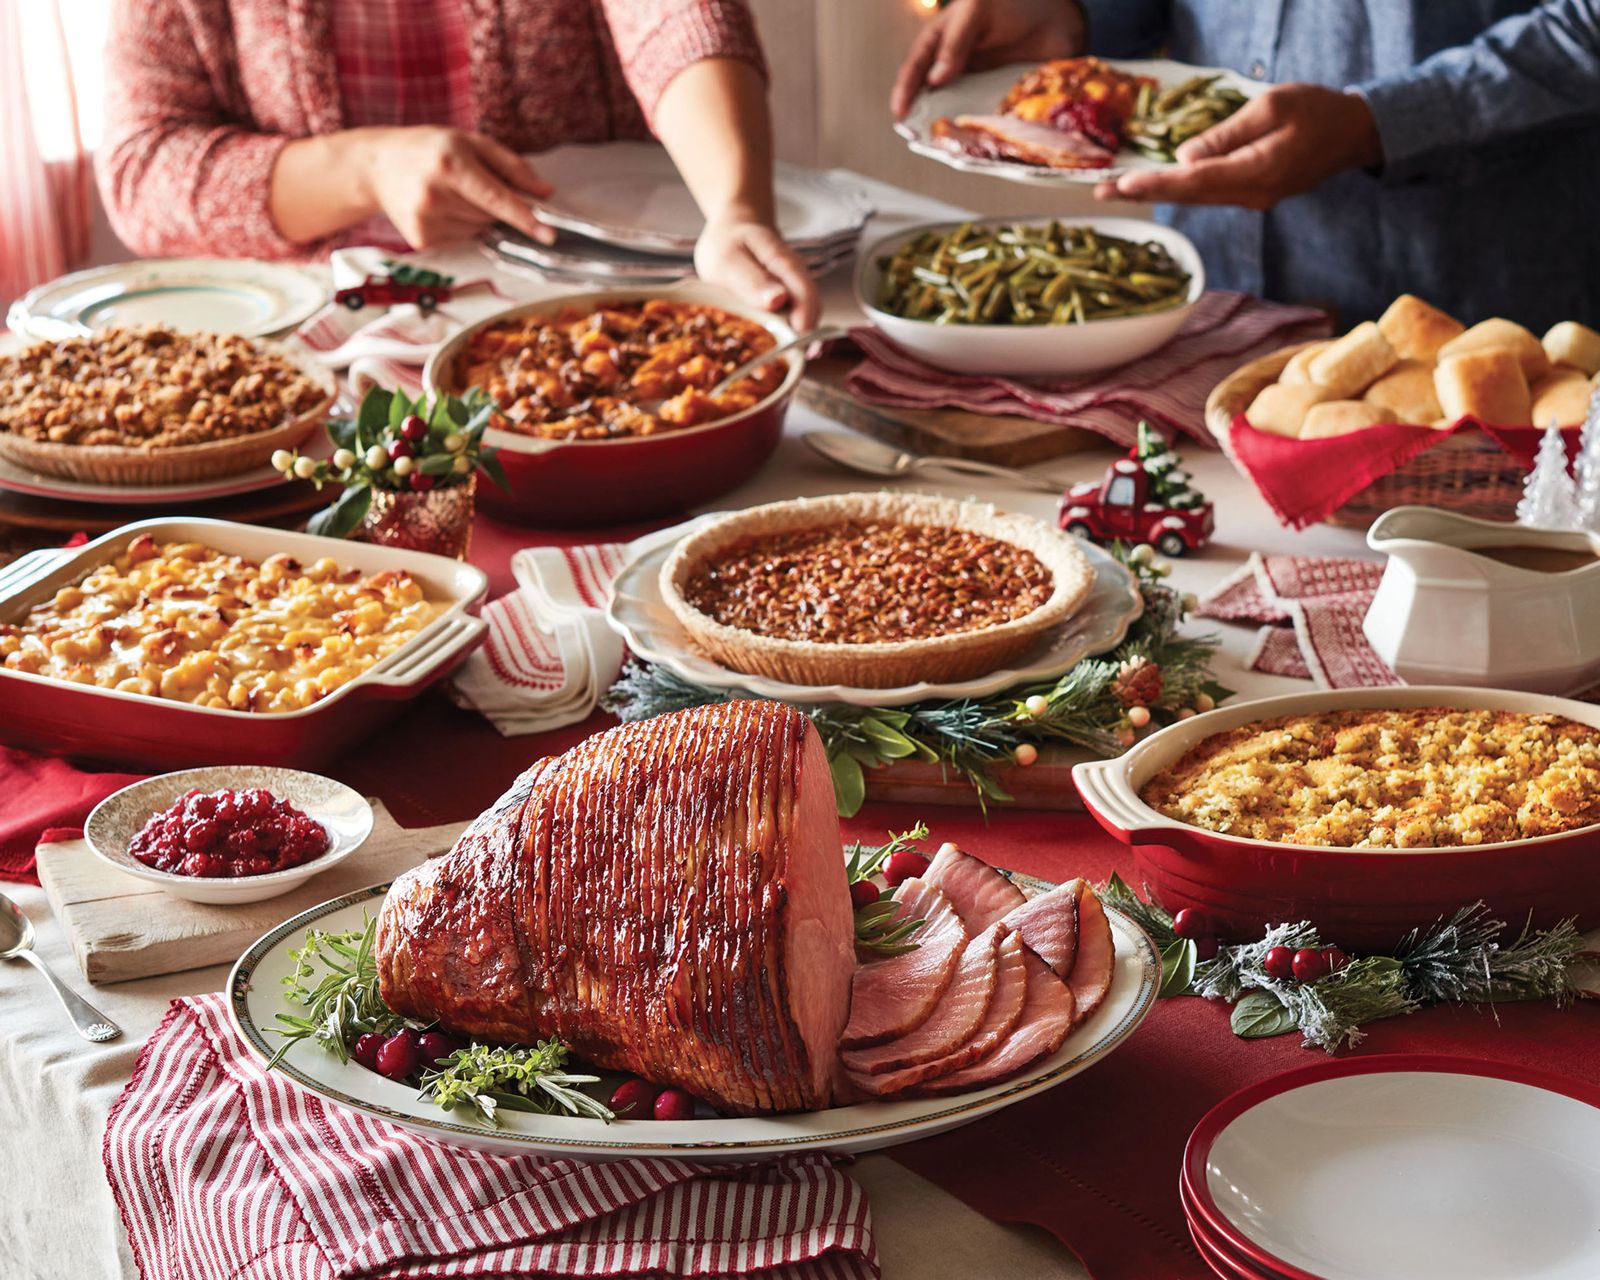 Cracker Barrel Old Country Store aide les familles à célébrer ensemble avec soin cette saison des fêtes